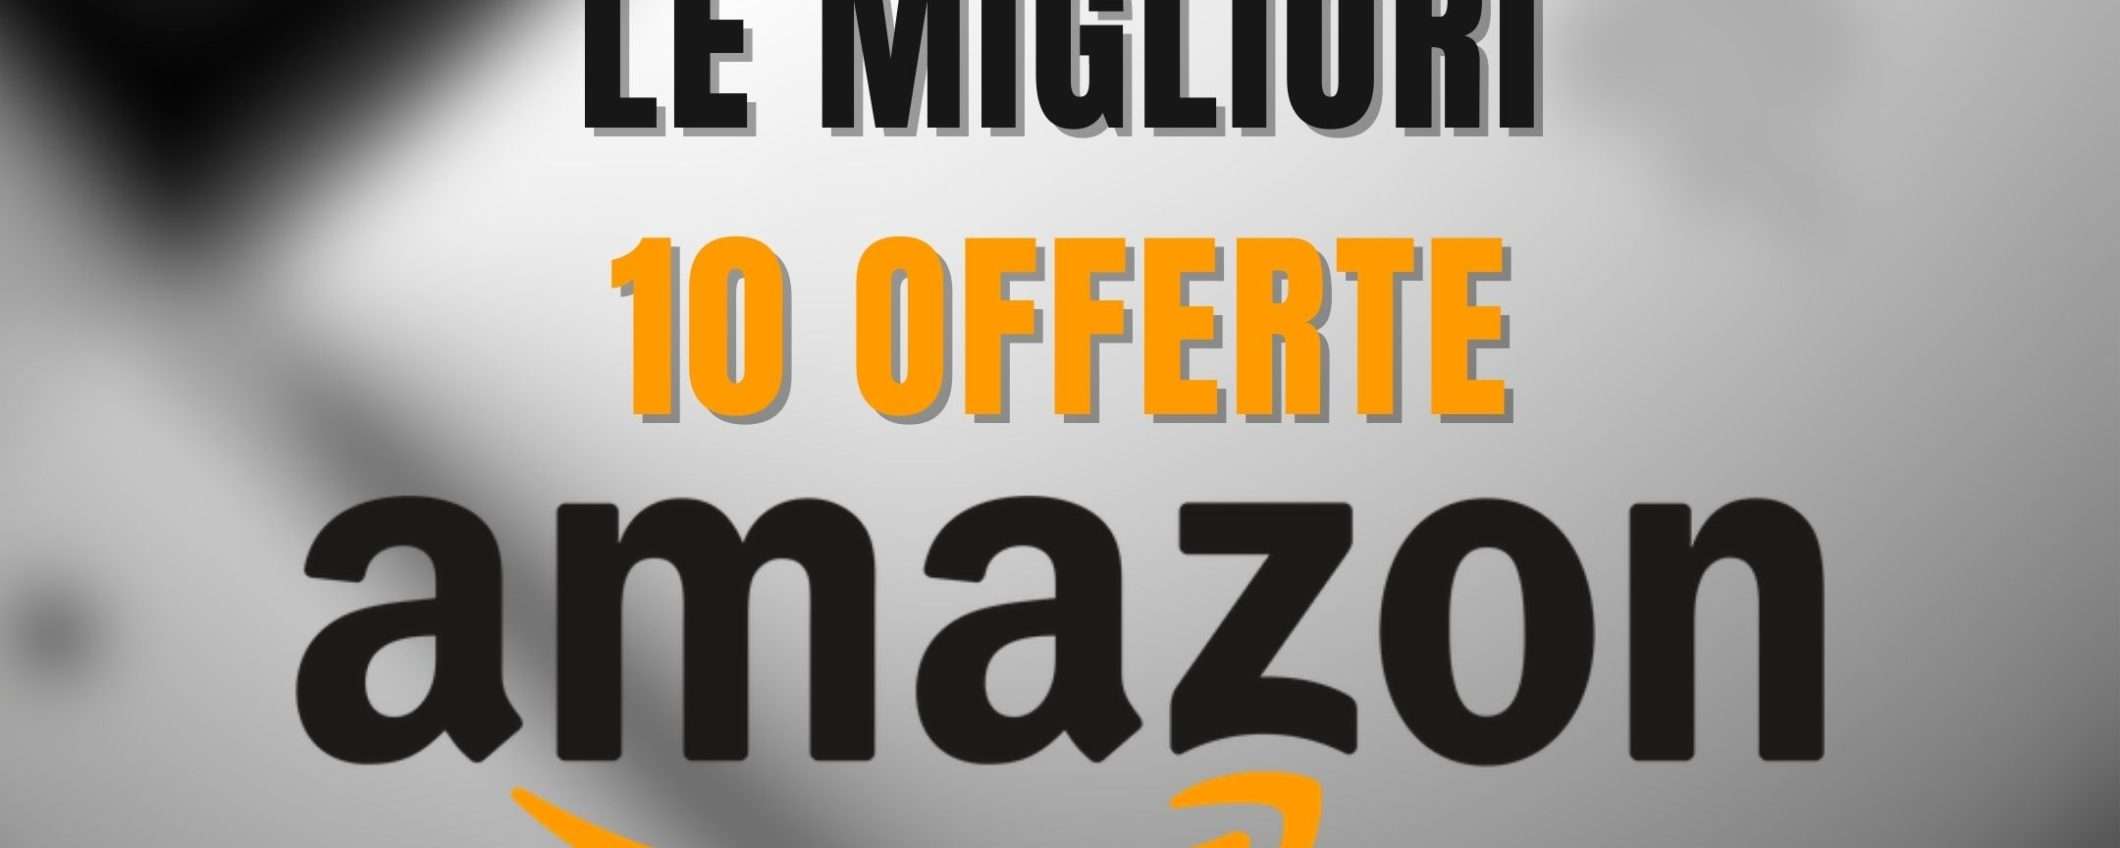 LE 10 MIGLIORI OFFERTE Amazon di oggi: SCONTI FOLLI fino al 72%!